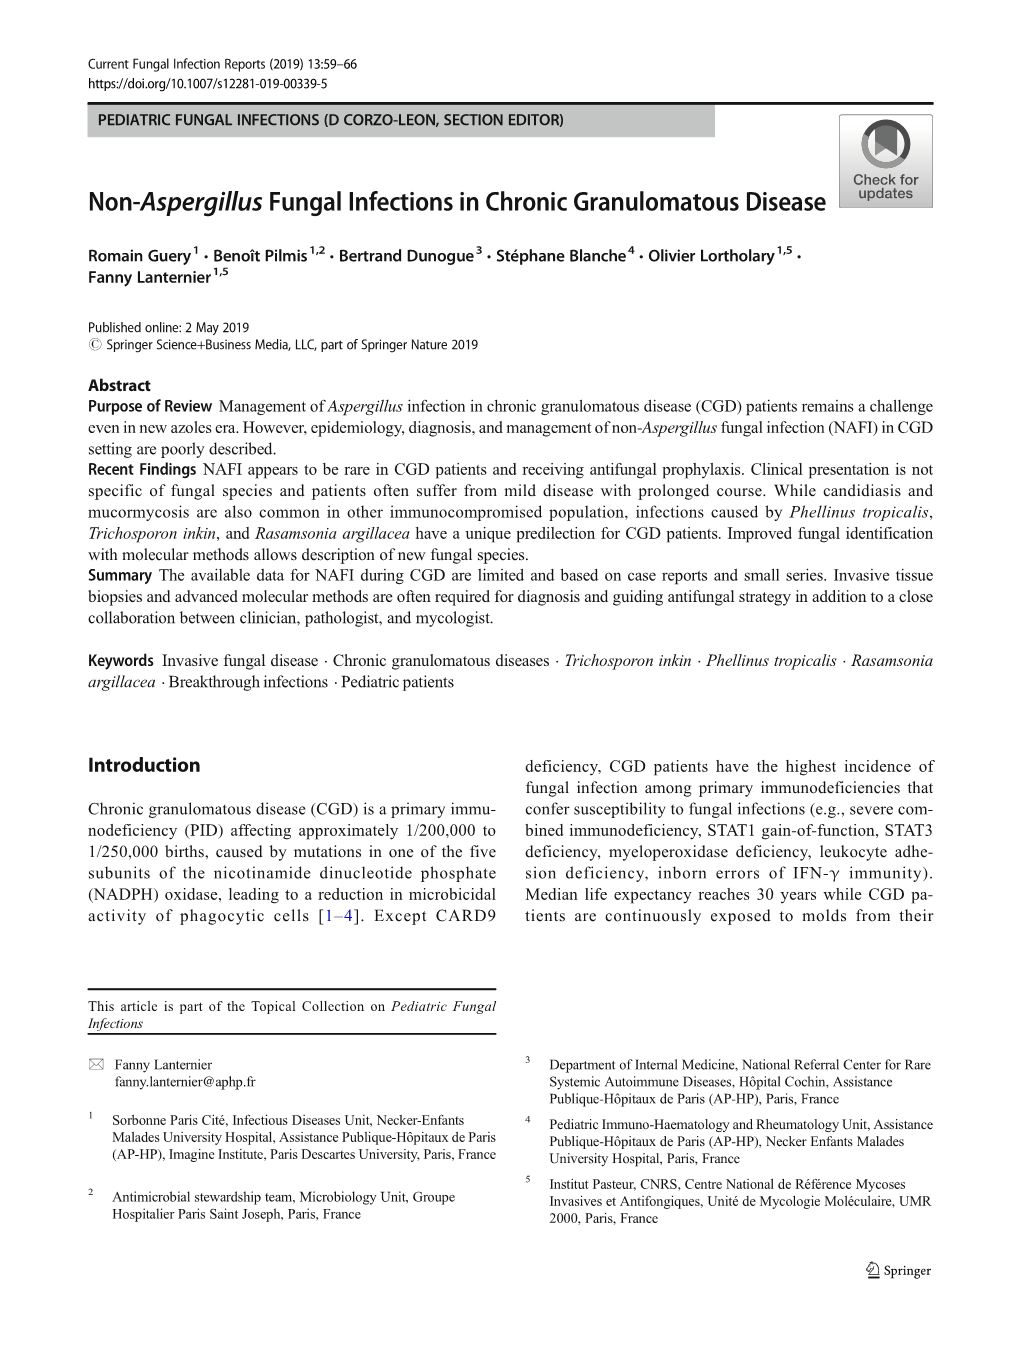 Non-Aspergillus Fungal Infections in Chronic Granulomatous Disease